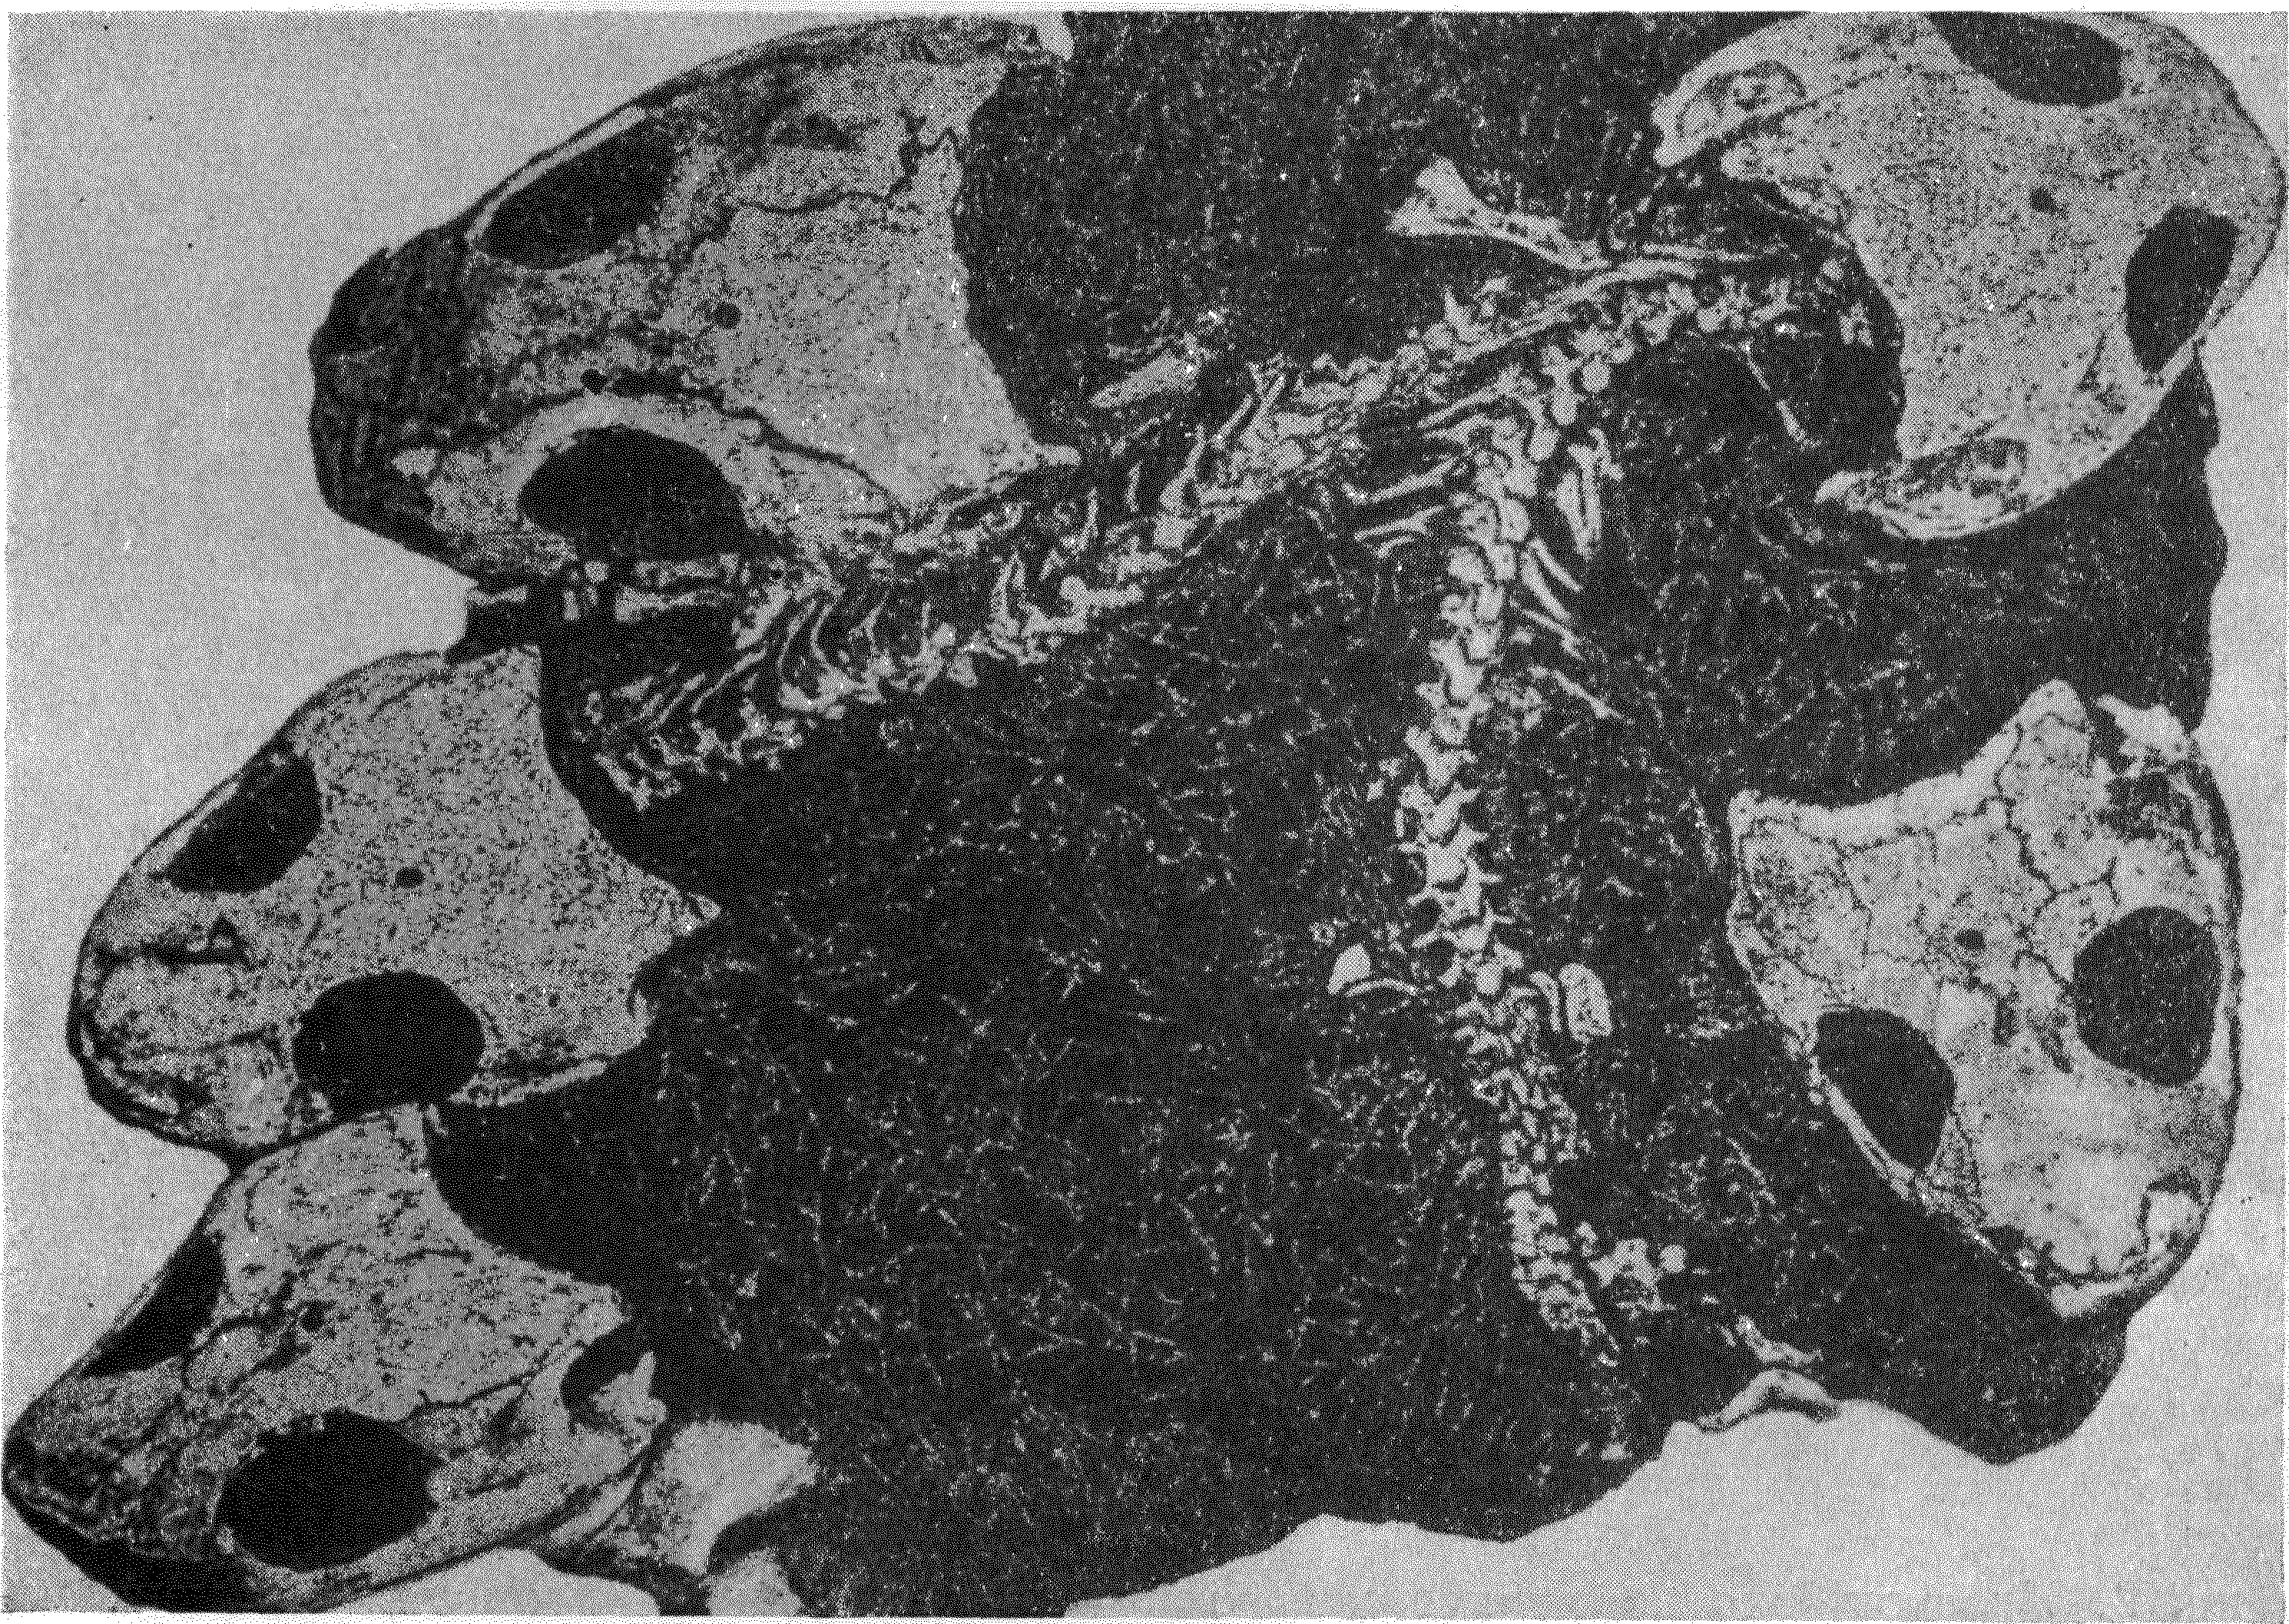 Фиг. 2. Скопление скелетов стегоцефалов Micropholis в маленькой линзе темного мергеля, залегающей в углублении на поверхности напластования нижележащей толщи. Триасовые отложения формации Карроо в Южной Африке. Уменьшено в 2 раза